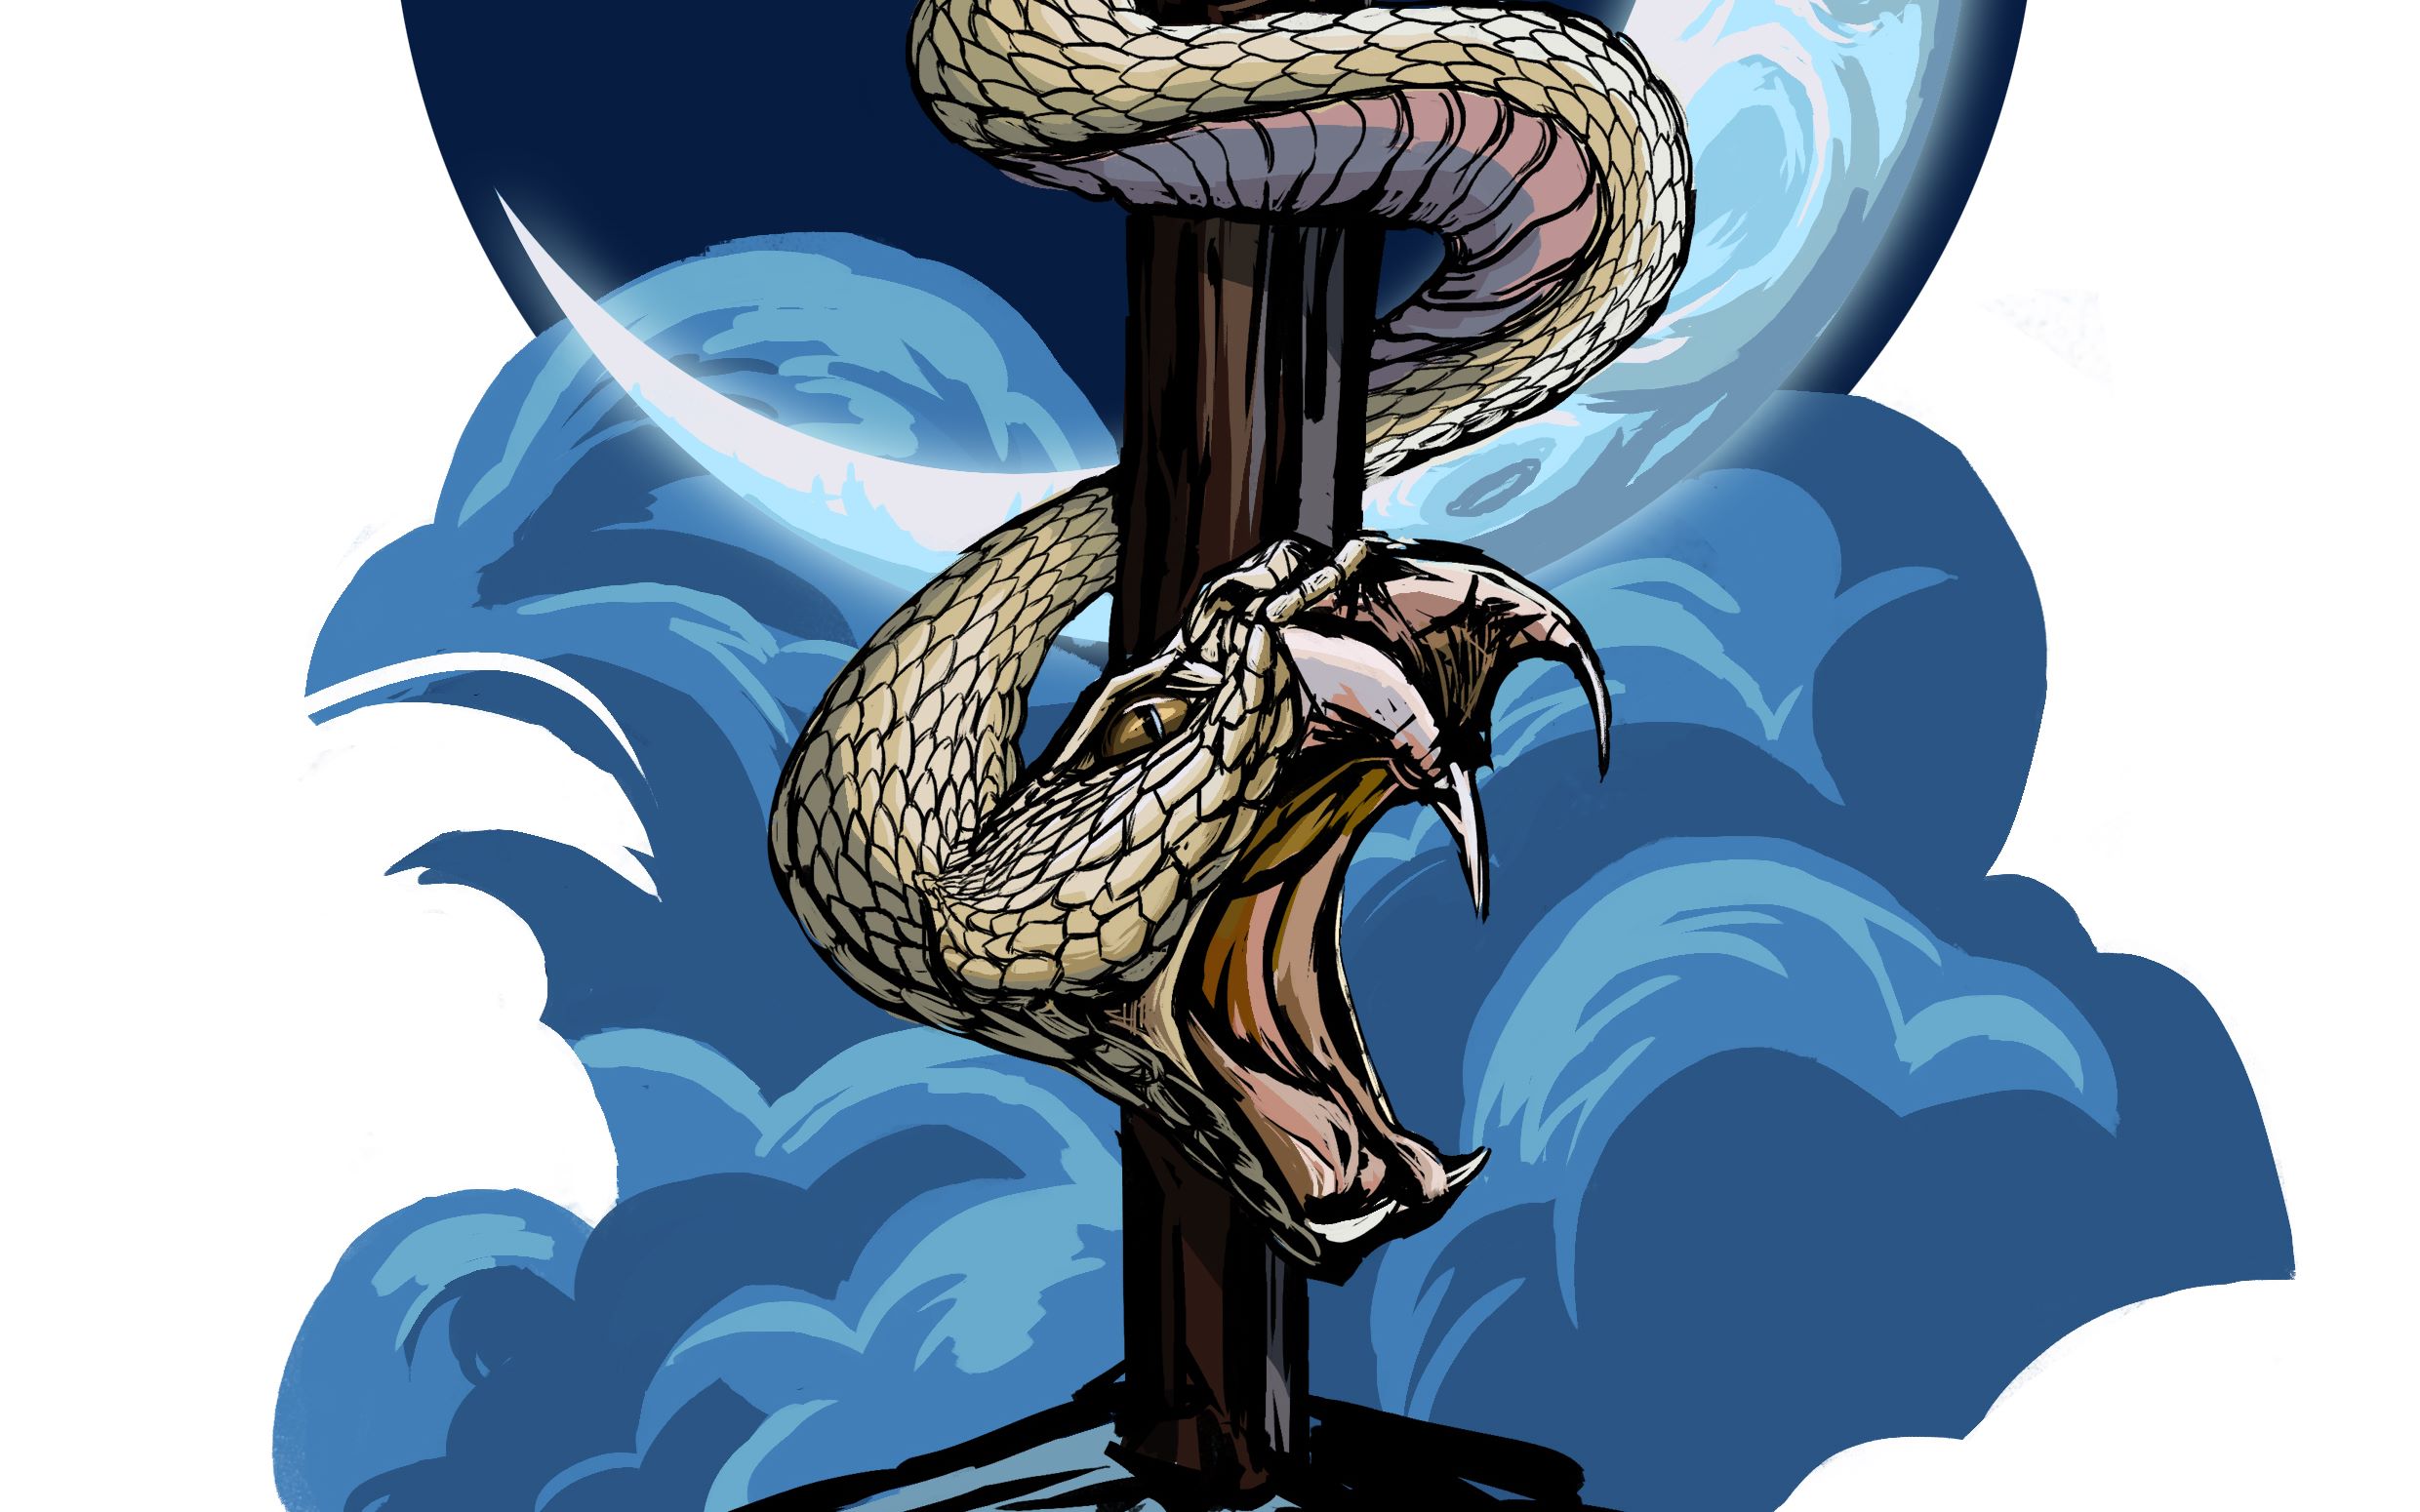 《蛇》插画绘制过程及t恤效果展示